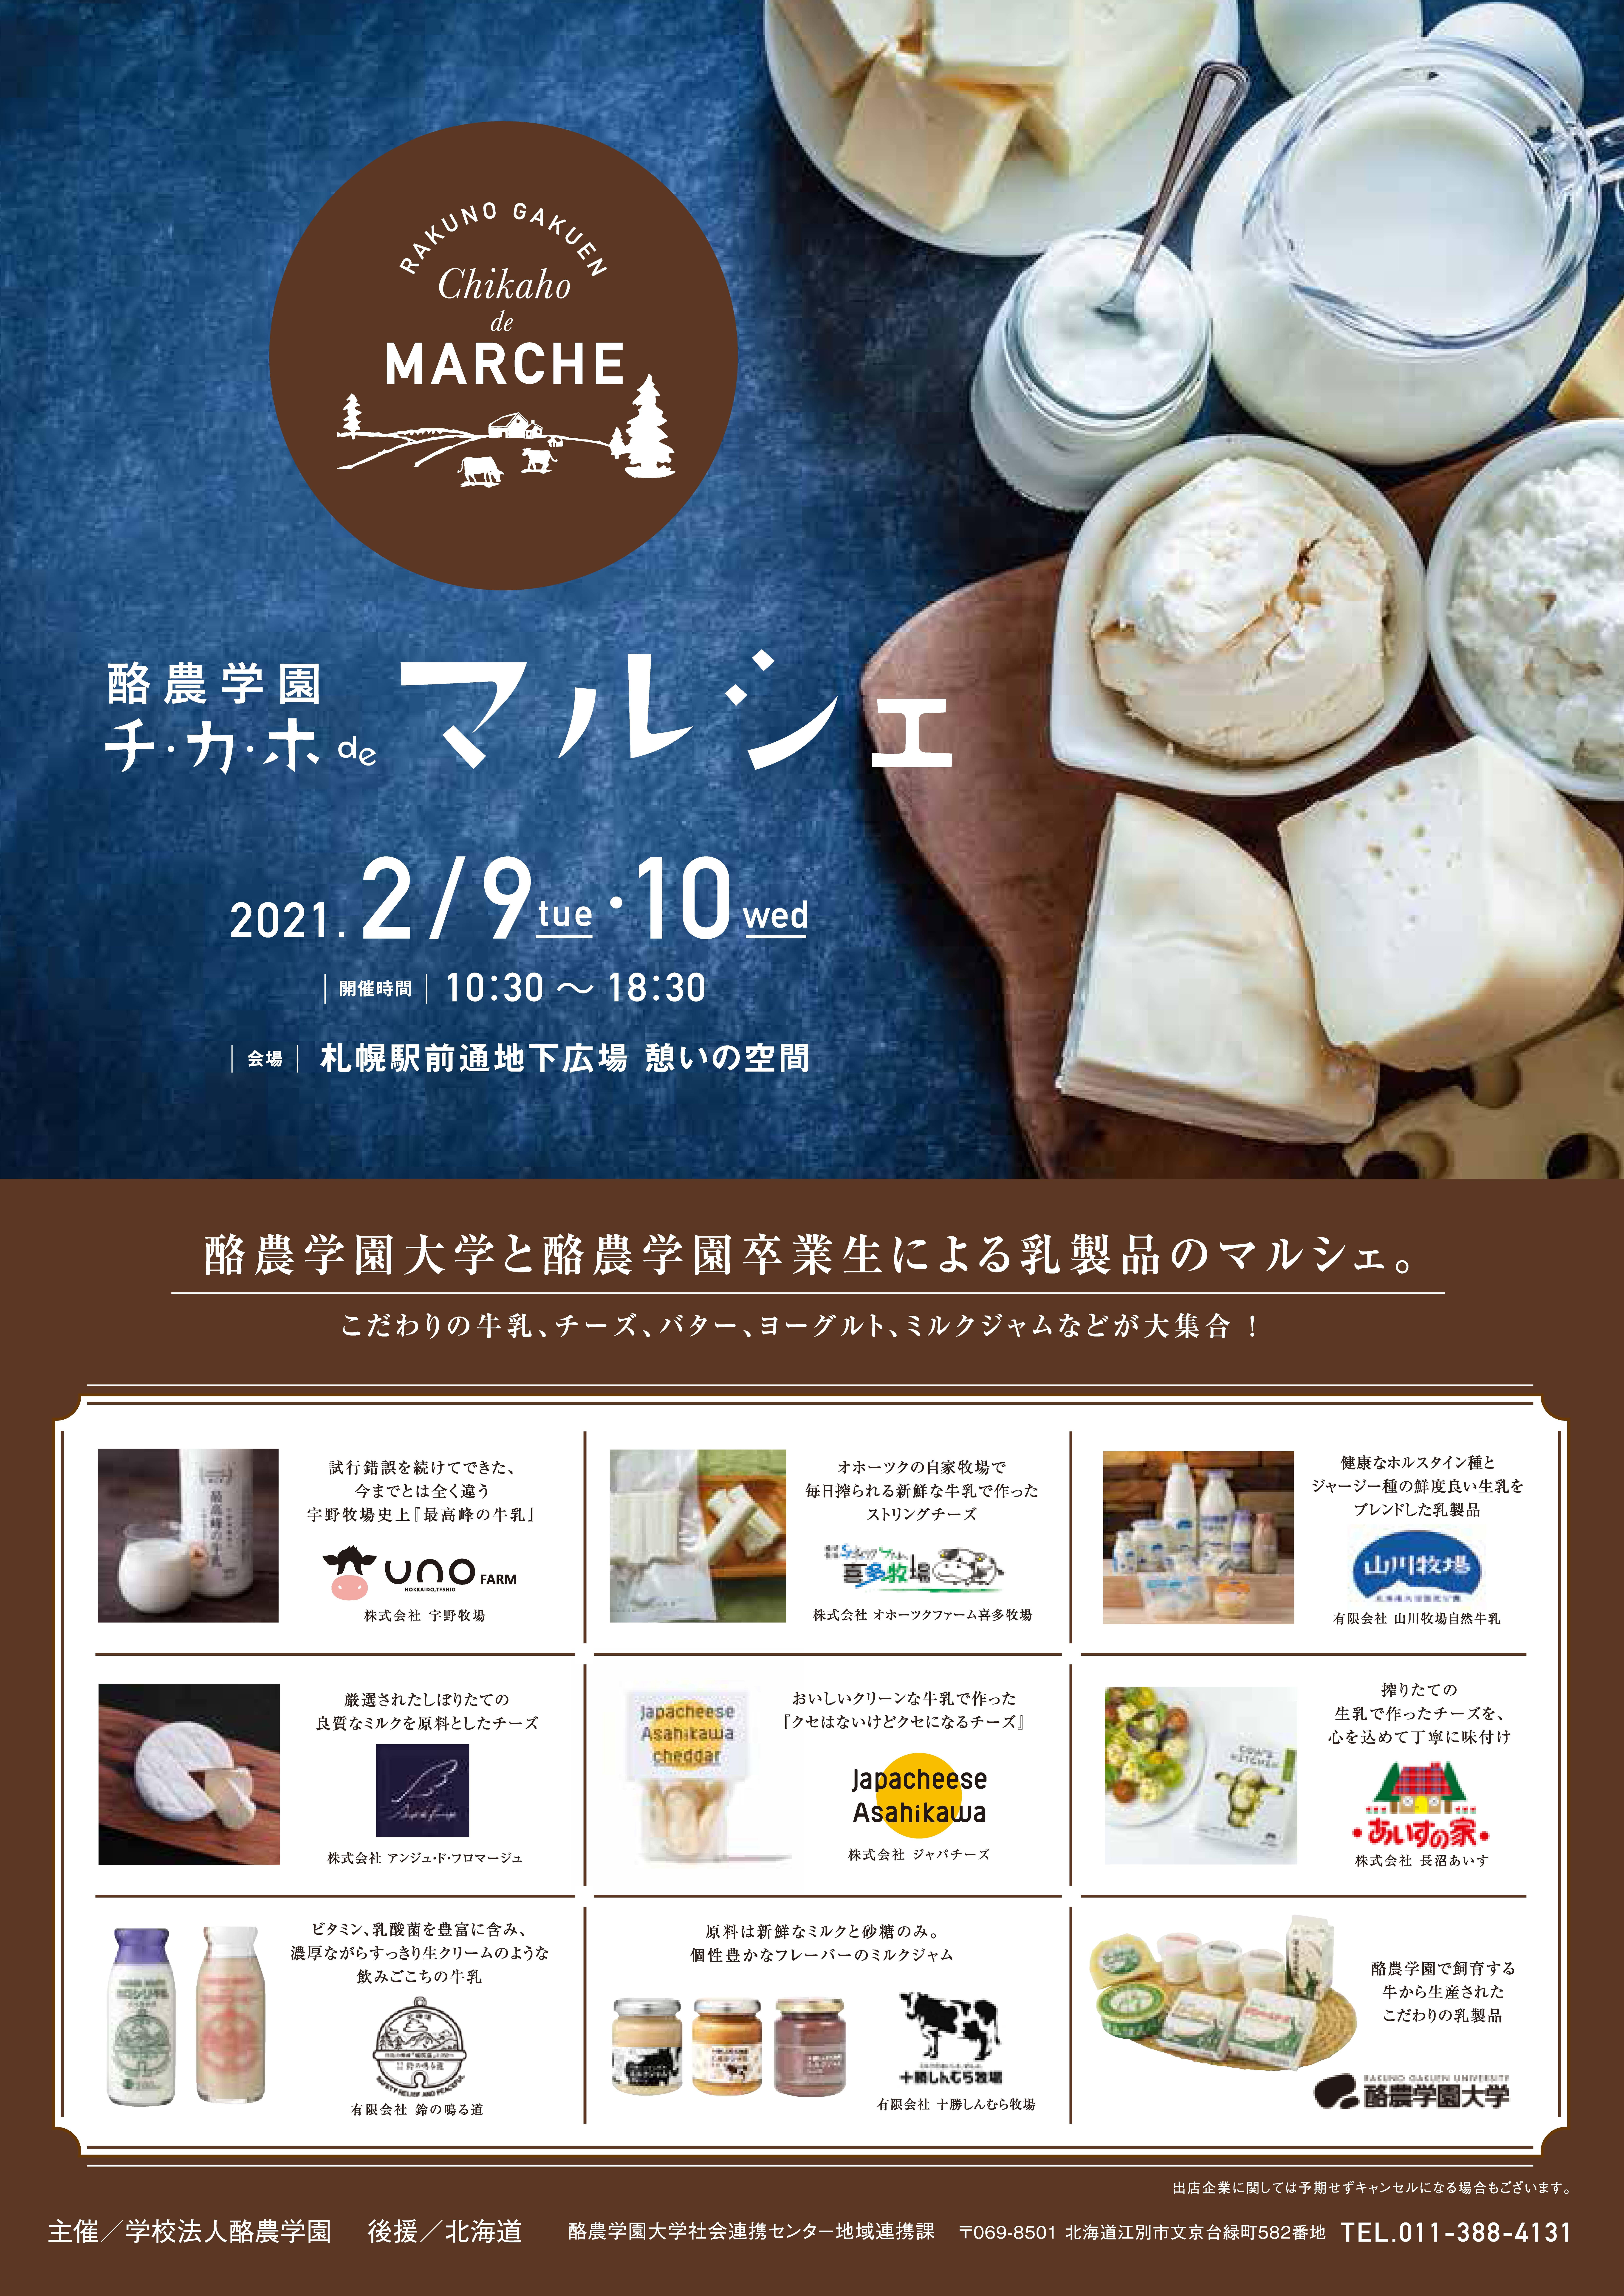 酪農学園大学が2月9～10日に「酪農学園チ・カ・ホ de マルシェ」を開催 -- 札幌駅前通地下広場で乳製品を販売